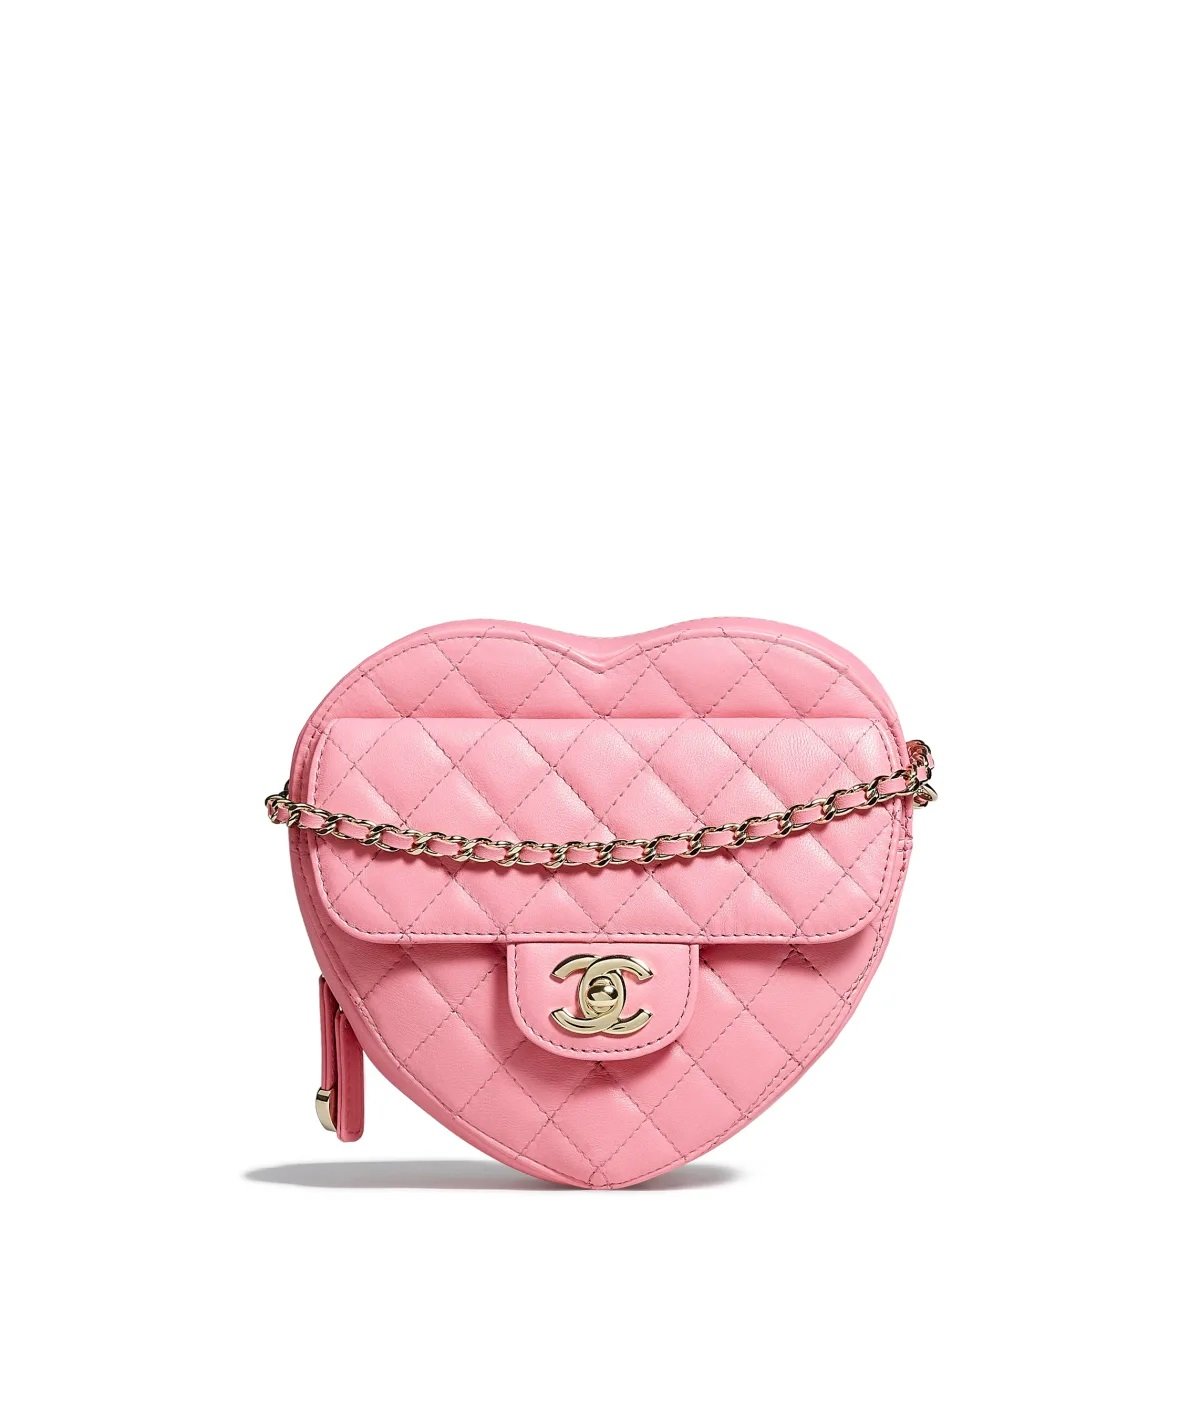 chanel heart shape handbag